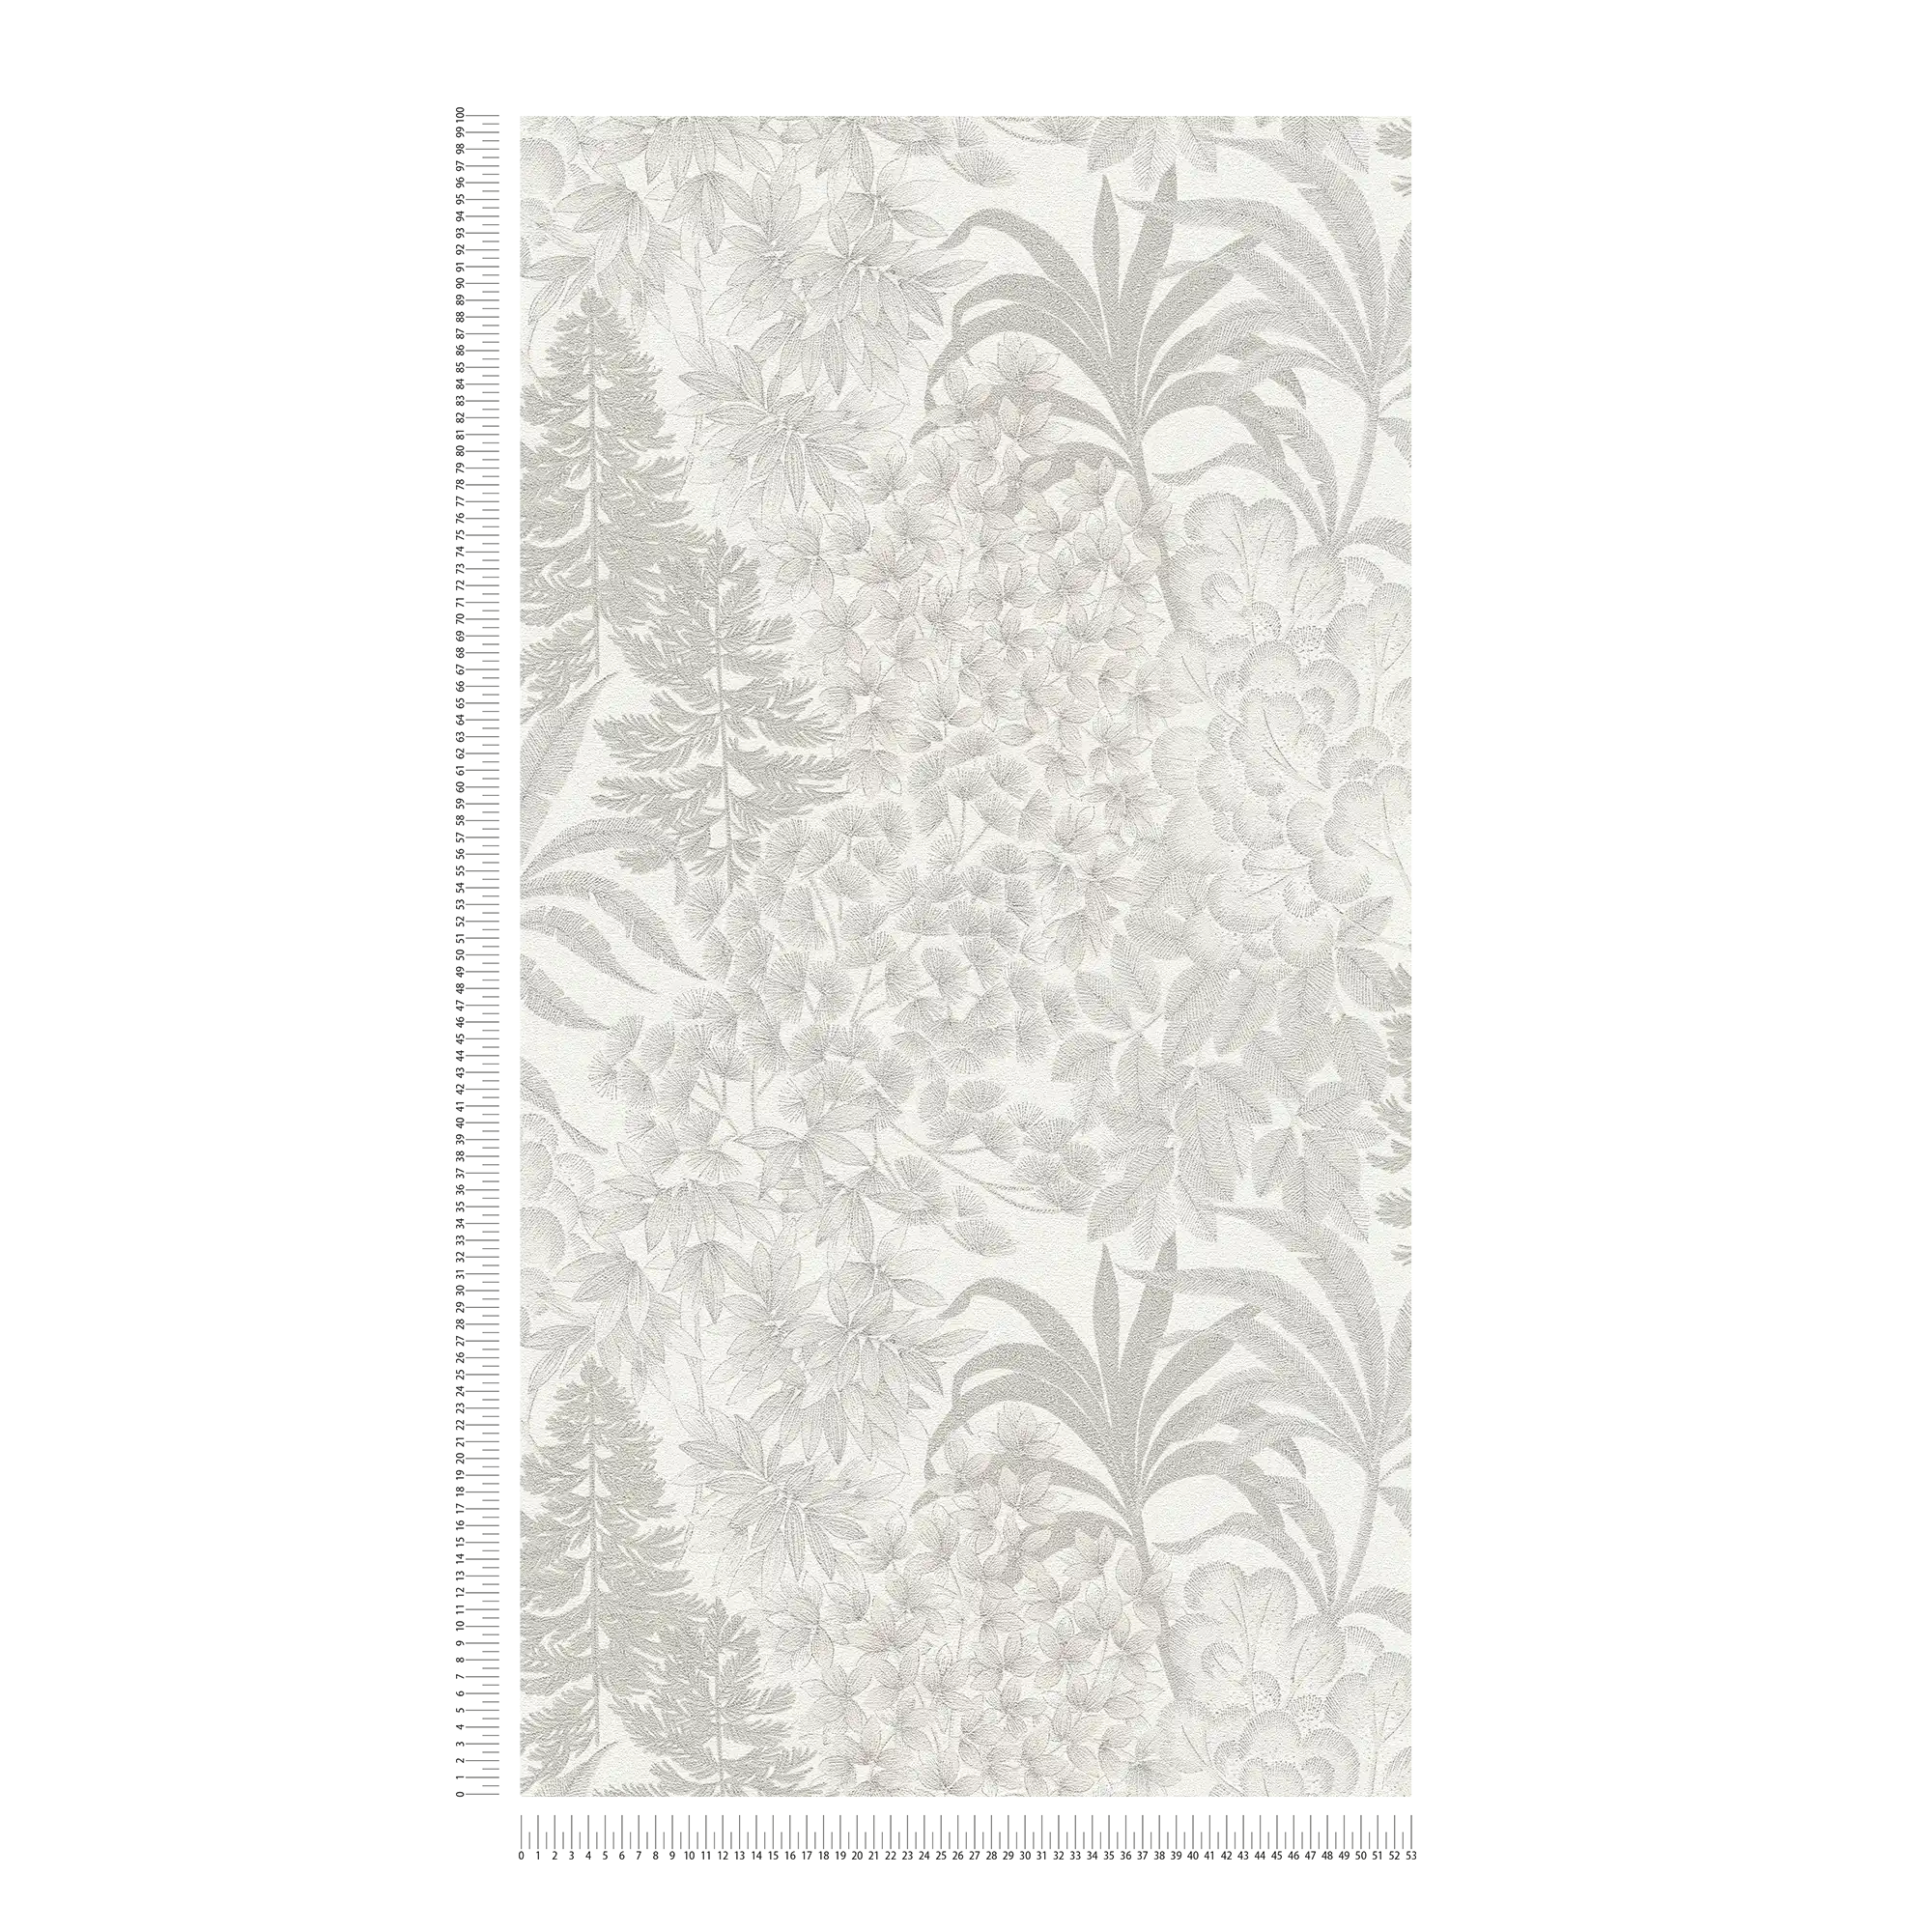             Carta da parati floreale leggermente lucida in un colore tenue - bianco, grigio, argento
        